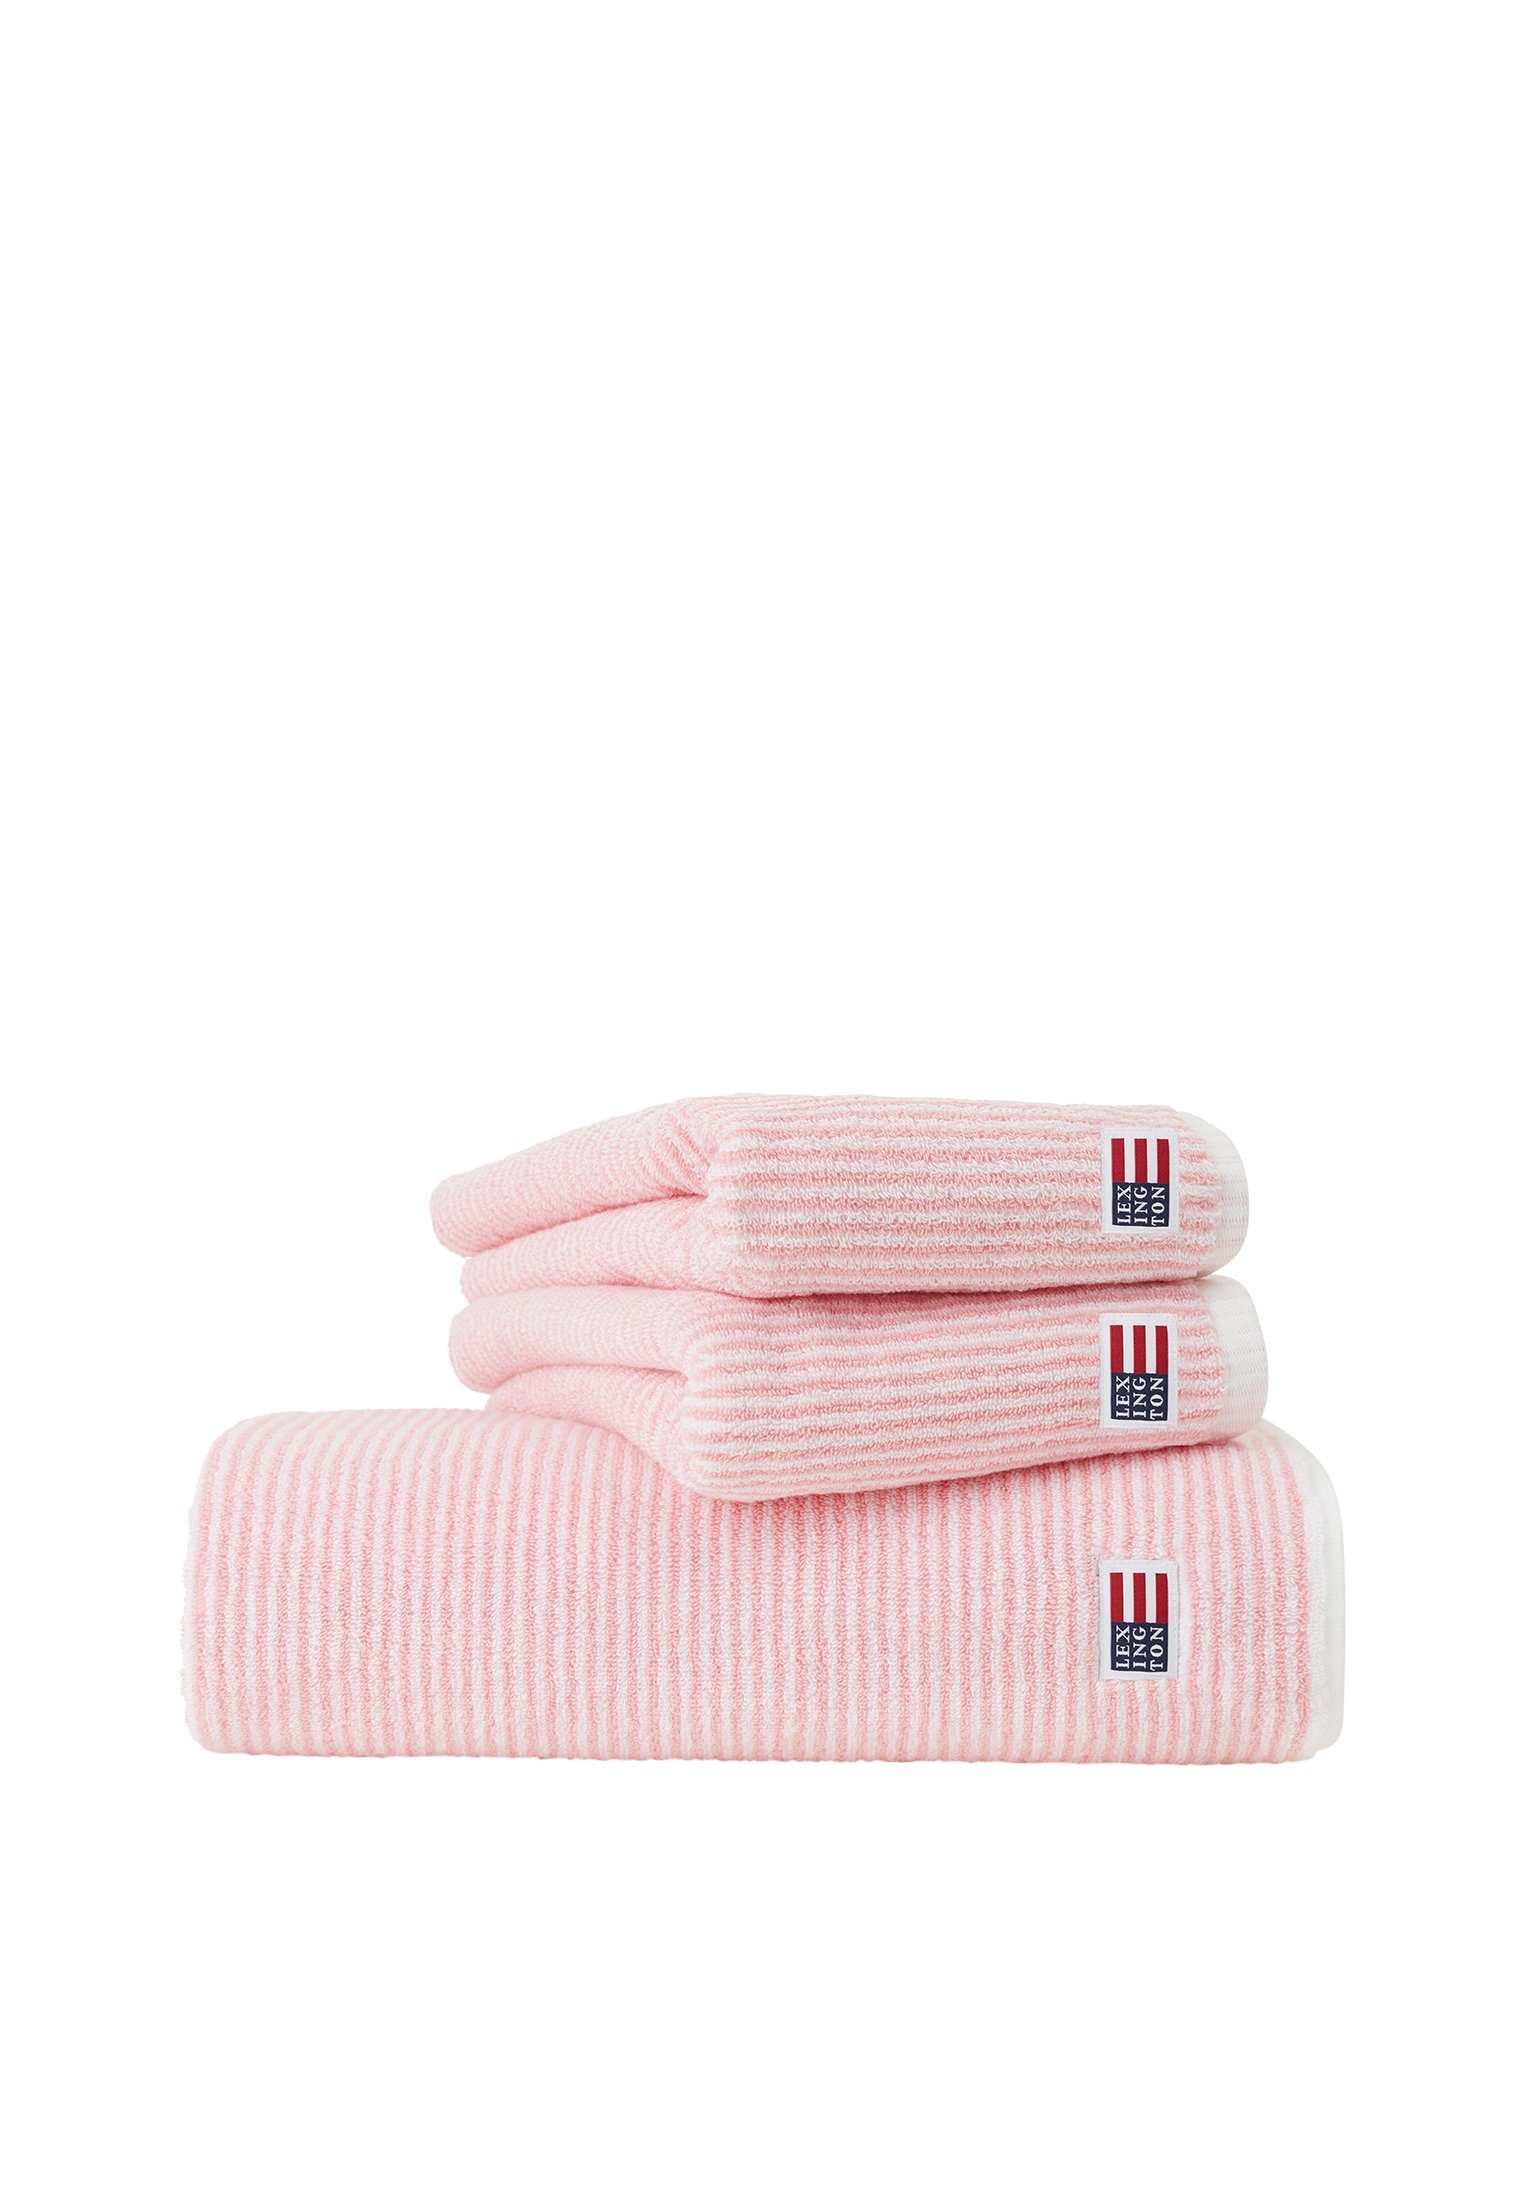 Lexington Handtuch Original Towel petunia pink/white | Alle Handtücher